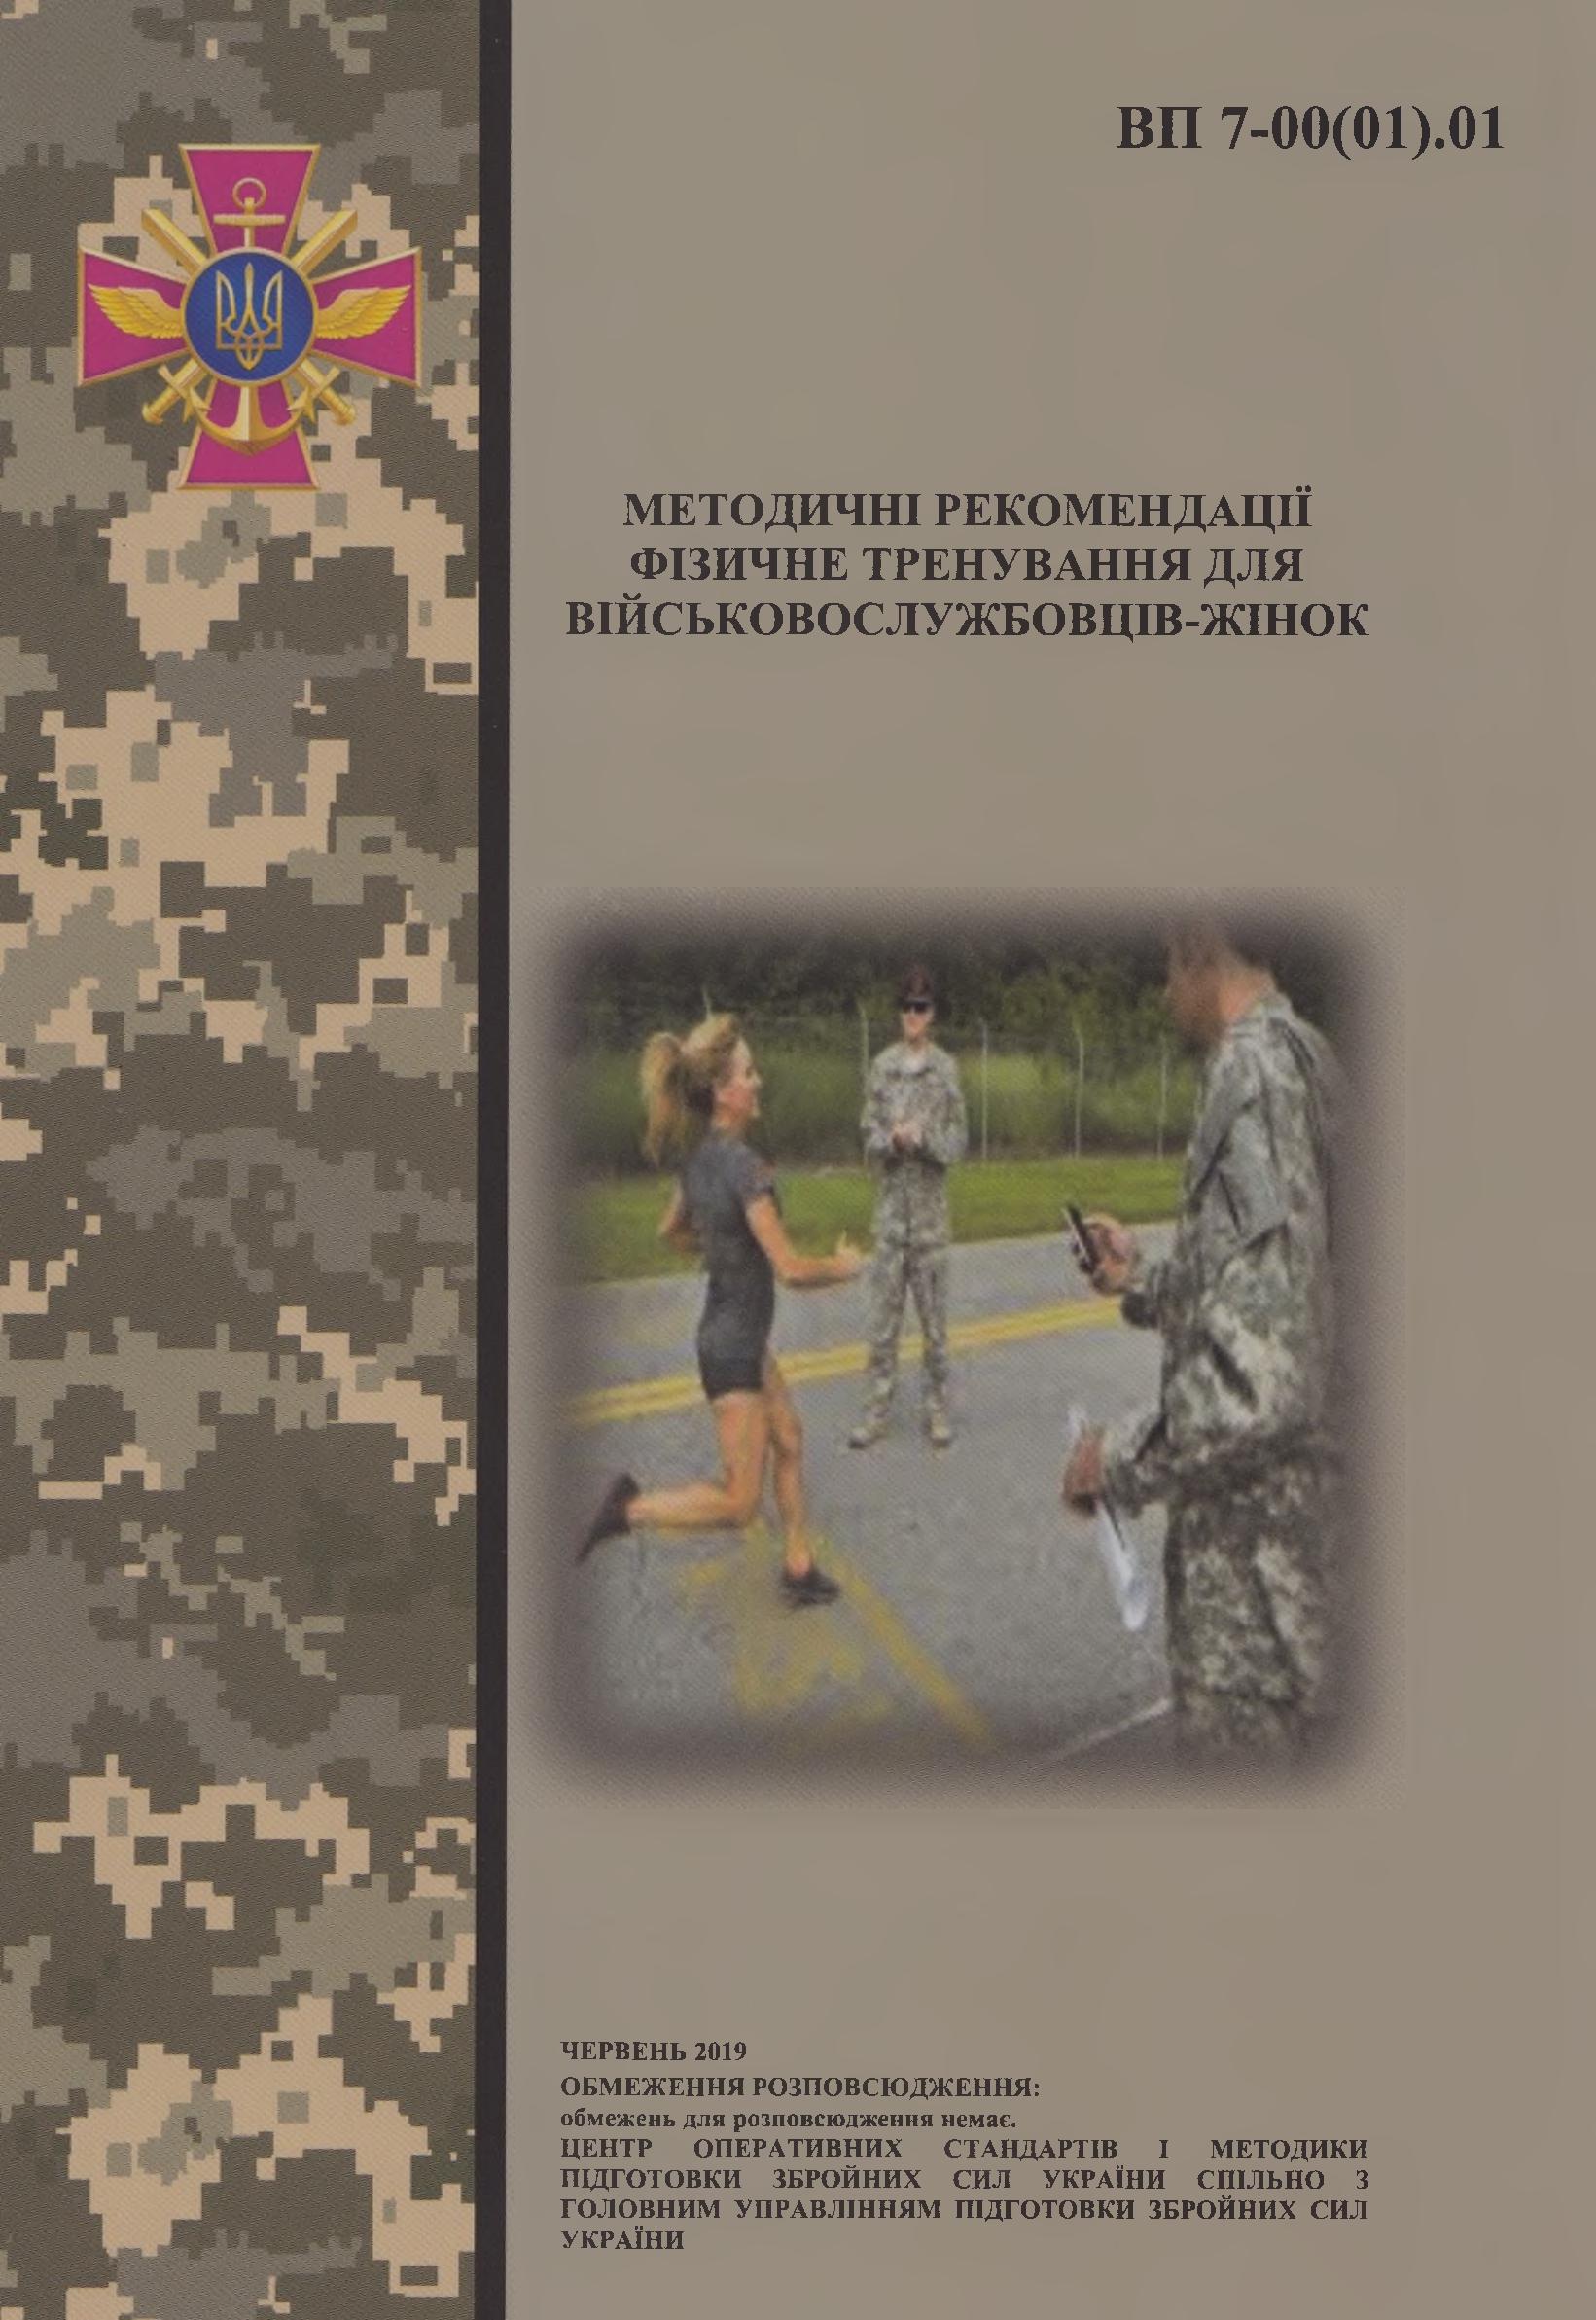 Фізичне тренування для військовослужбовців-жінок : методичні рекомендації